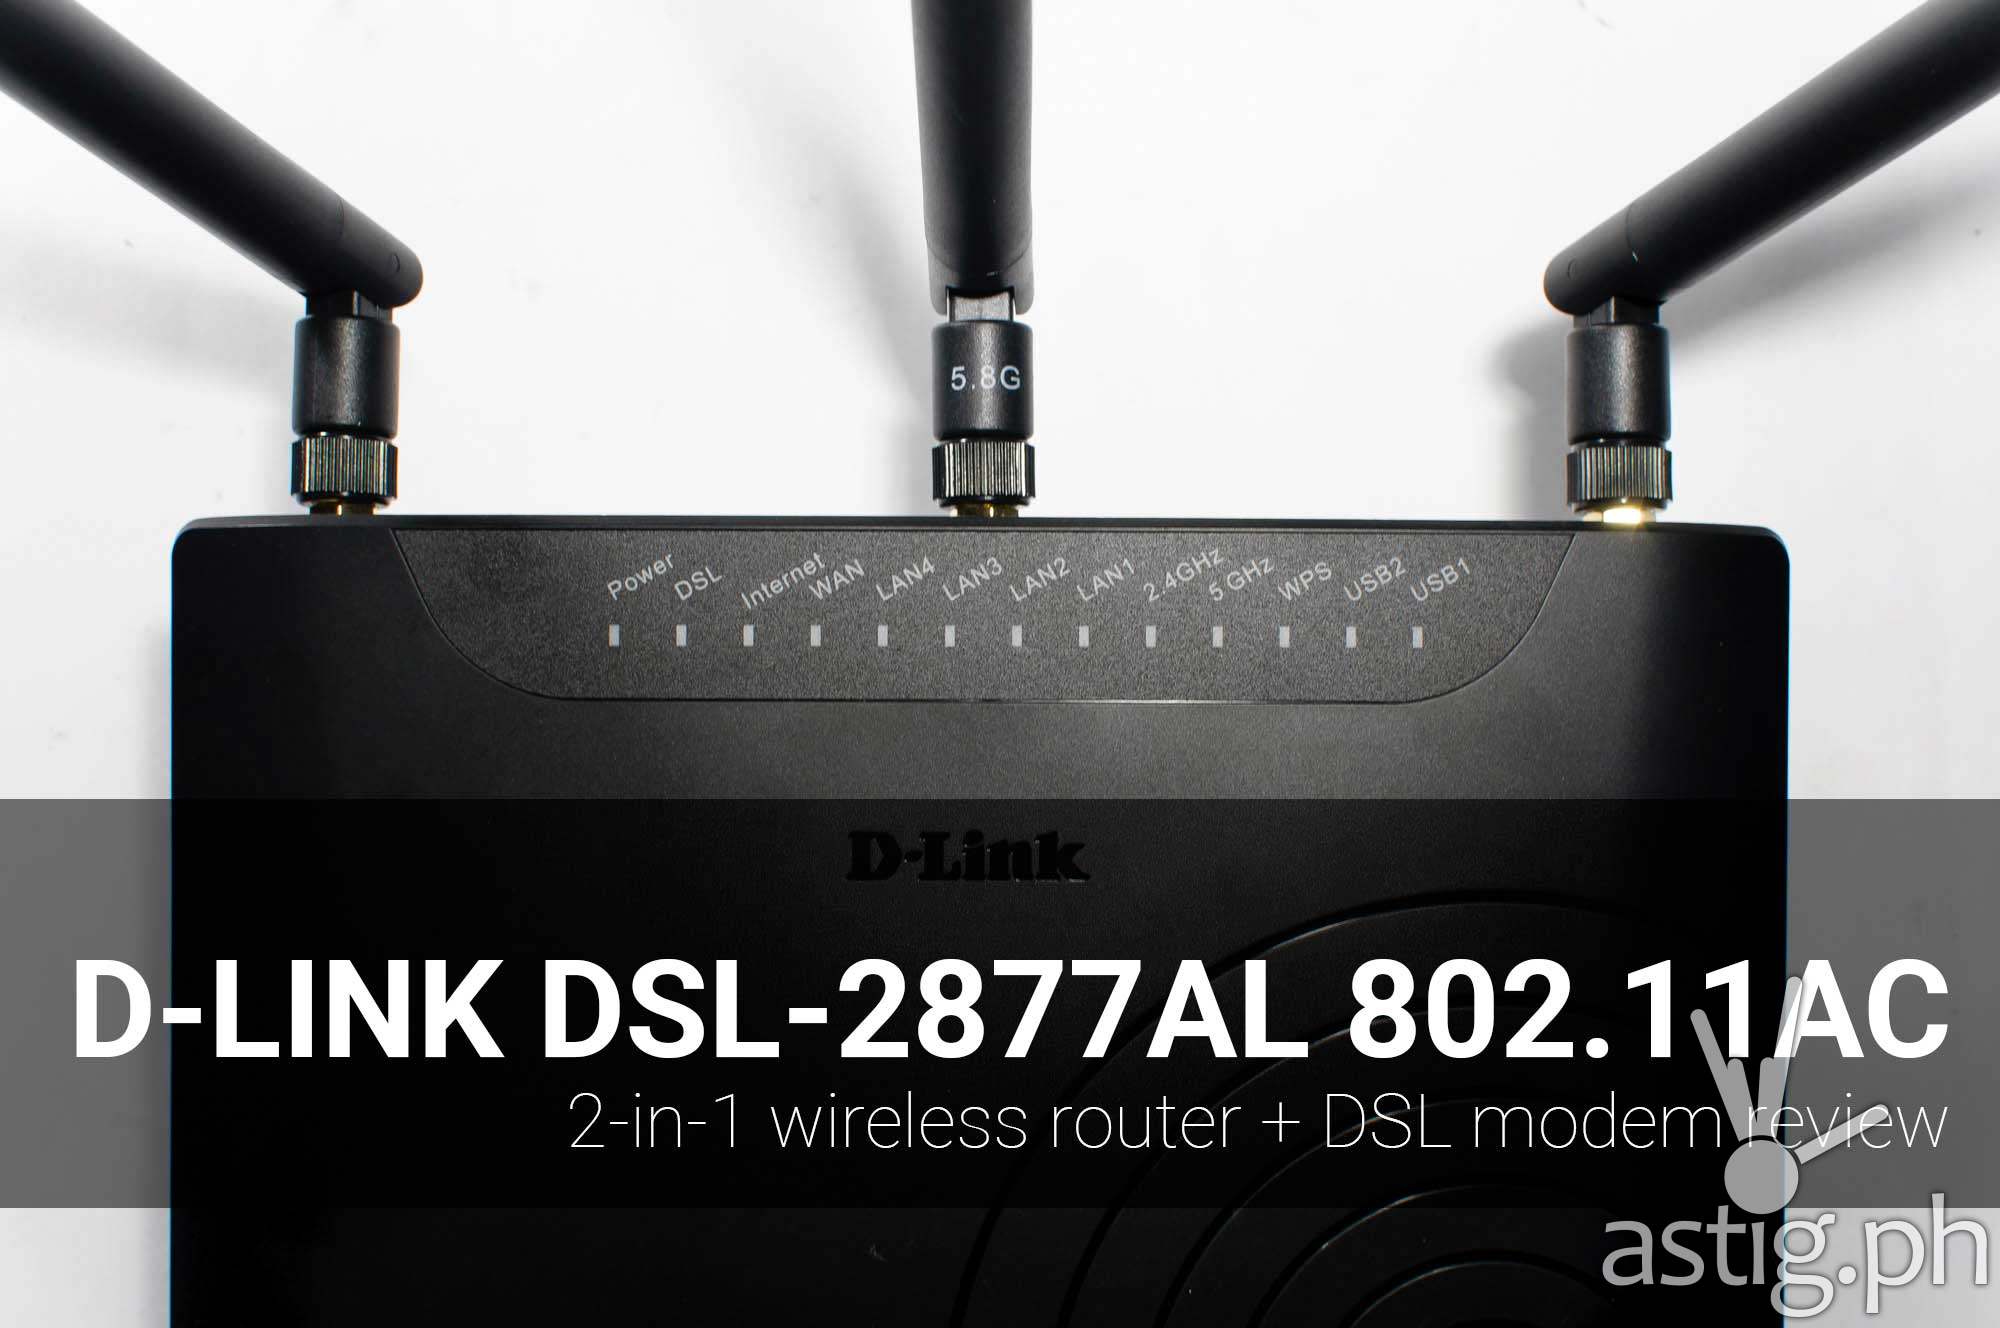 D-Link DSL-2877AL 802.11ac wireless router review